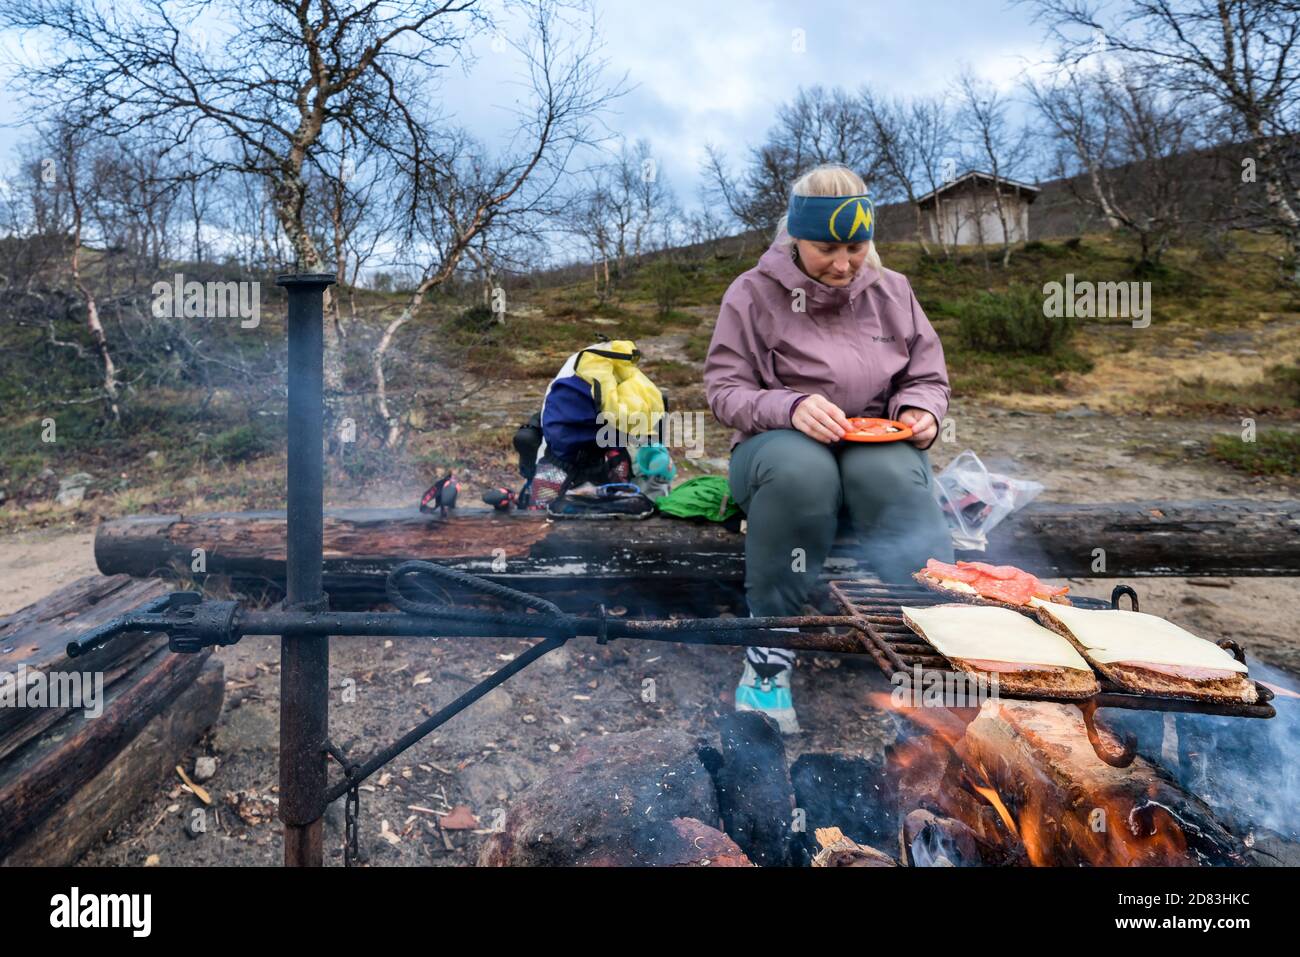 Elaboración de sándwiches calientes en el Parque Nacional UKK, Laponia, Finlandia Foto de stock